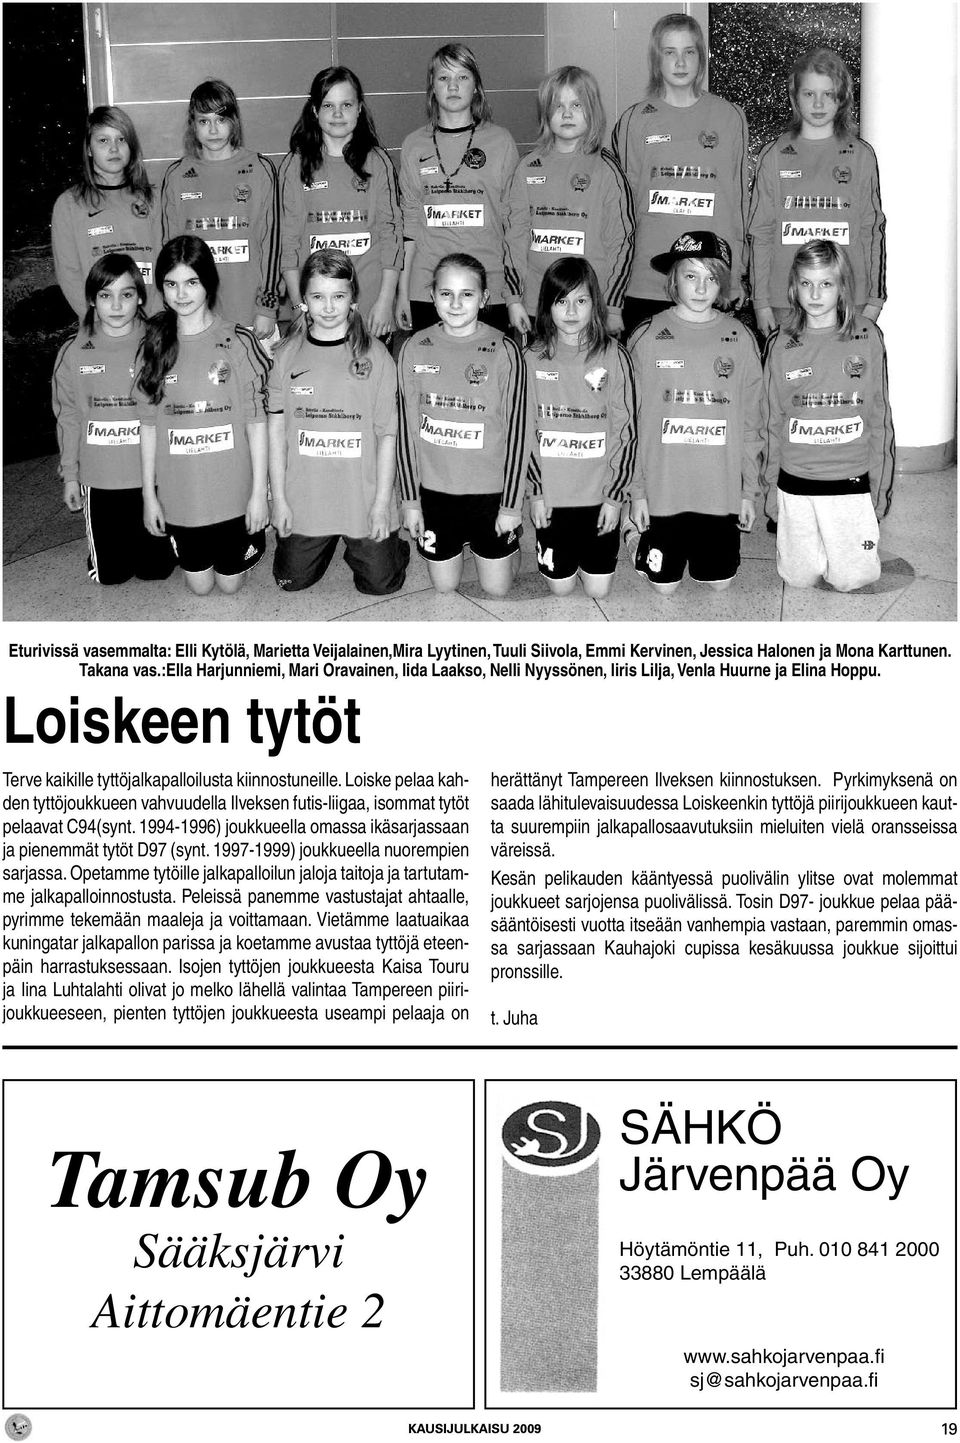 Loiske pelaa kahden tyttöjoukkueen vahvuudella Ilveksen futis-liigaa, isommat tytöt pelaavat C94(synt. 1994-1996) joukkueella omassa ikäsarjassaan ja pienemmät tytöt D97 (synt.